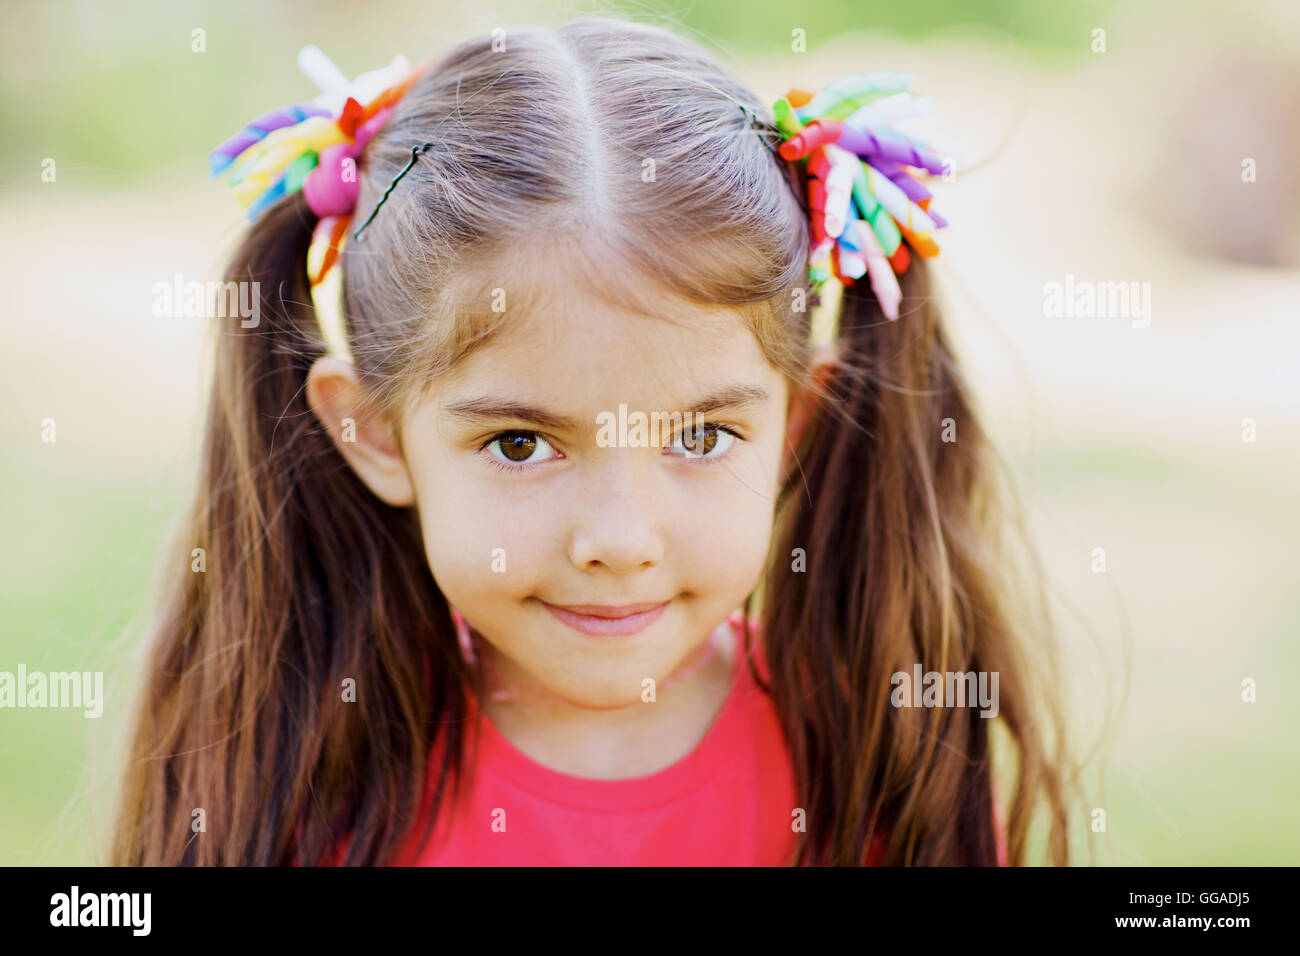 Little girl Stock Photo